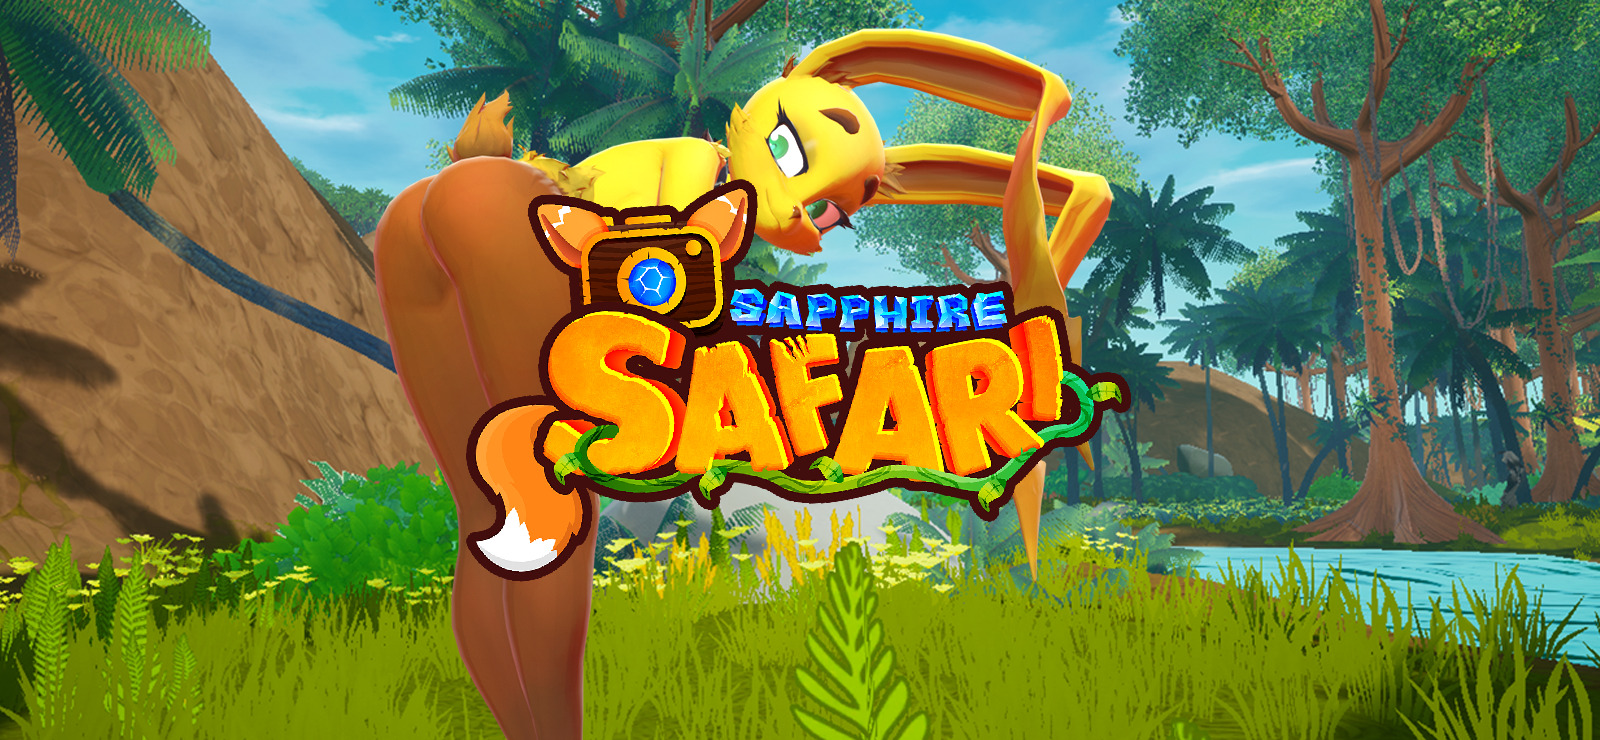 sapphire safari controls